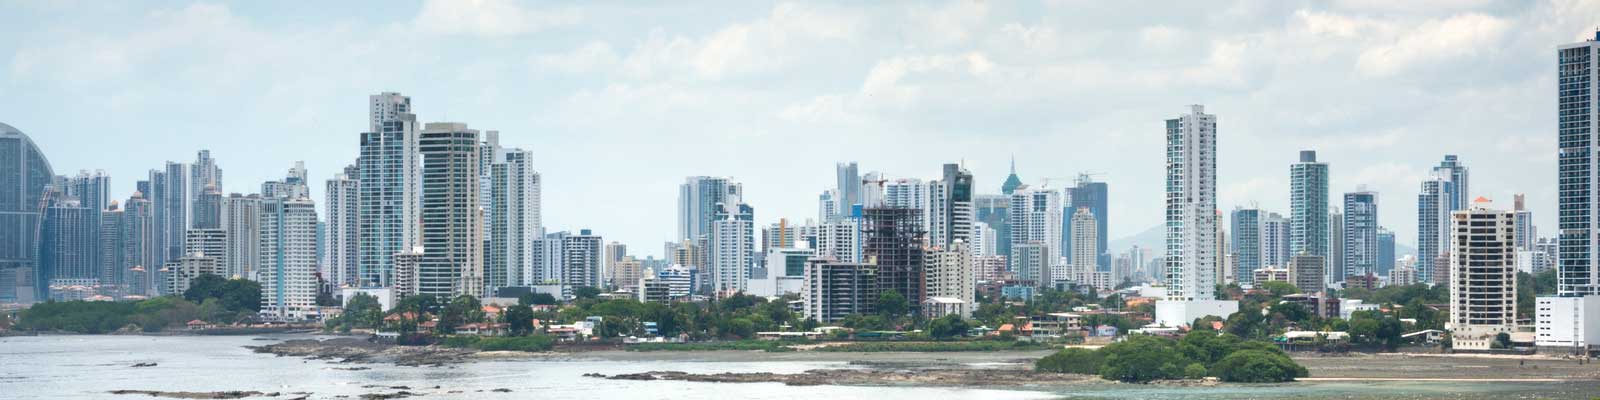 Panama Immobili - Case vacanza, immobili di prestigio, immobili sulla spiaggia - Investimenti di valore